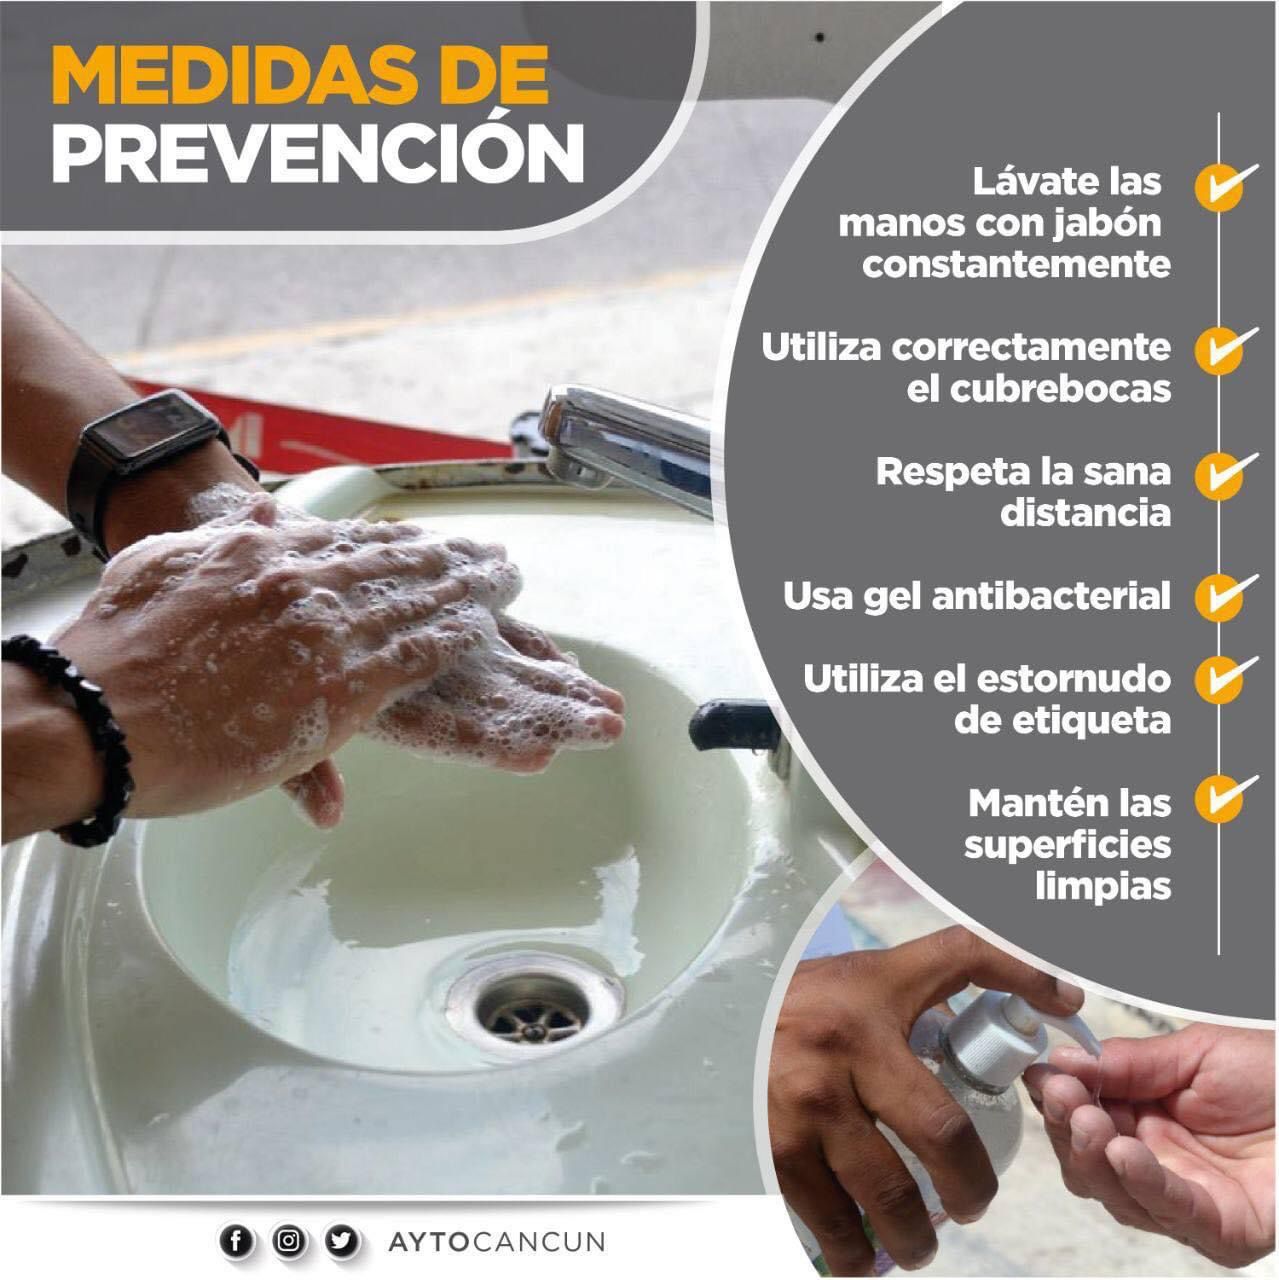 Con el objetivo de cuidar la salud de todos y continuar con la reactivación económica debemos reforzar las medidas de prevención contra el COVID-19. 🦠 Sigue las recomendaciones. ⬇️